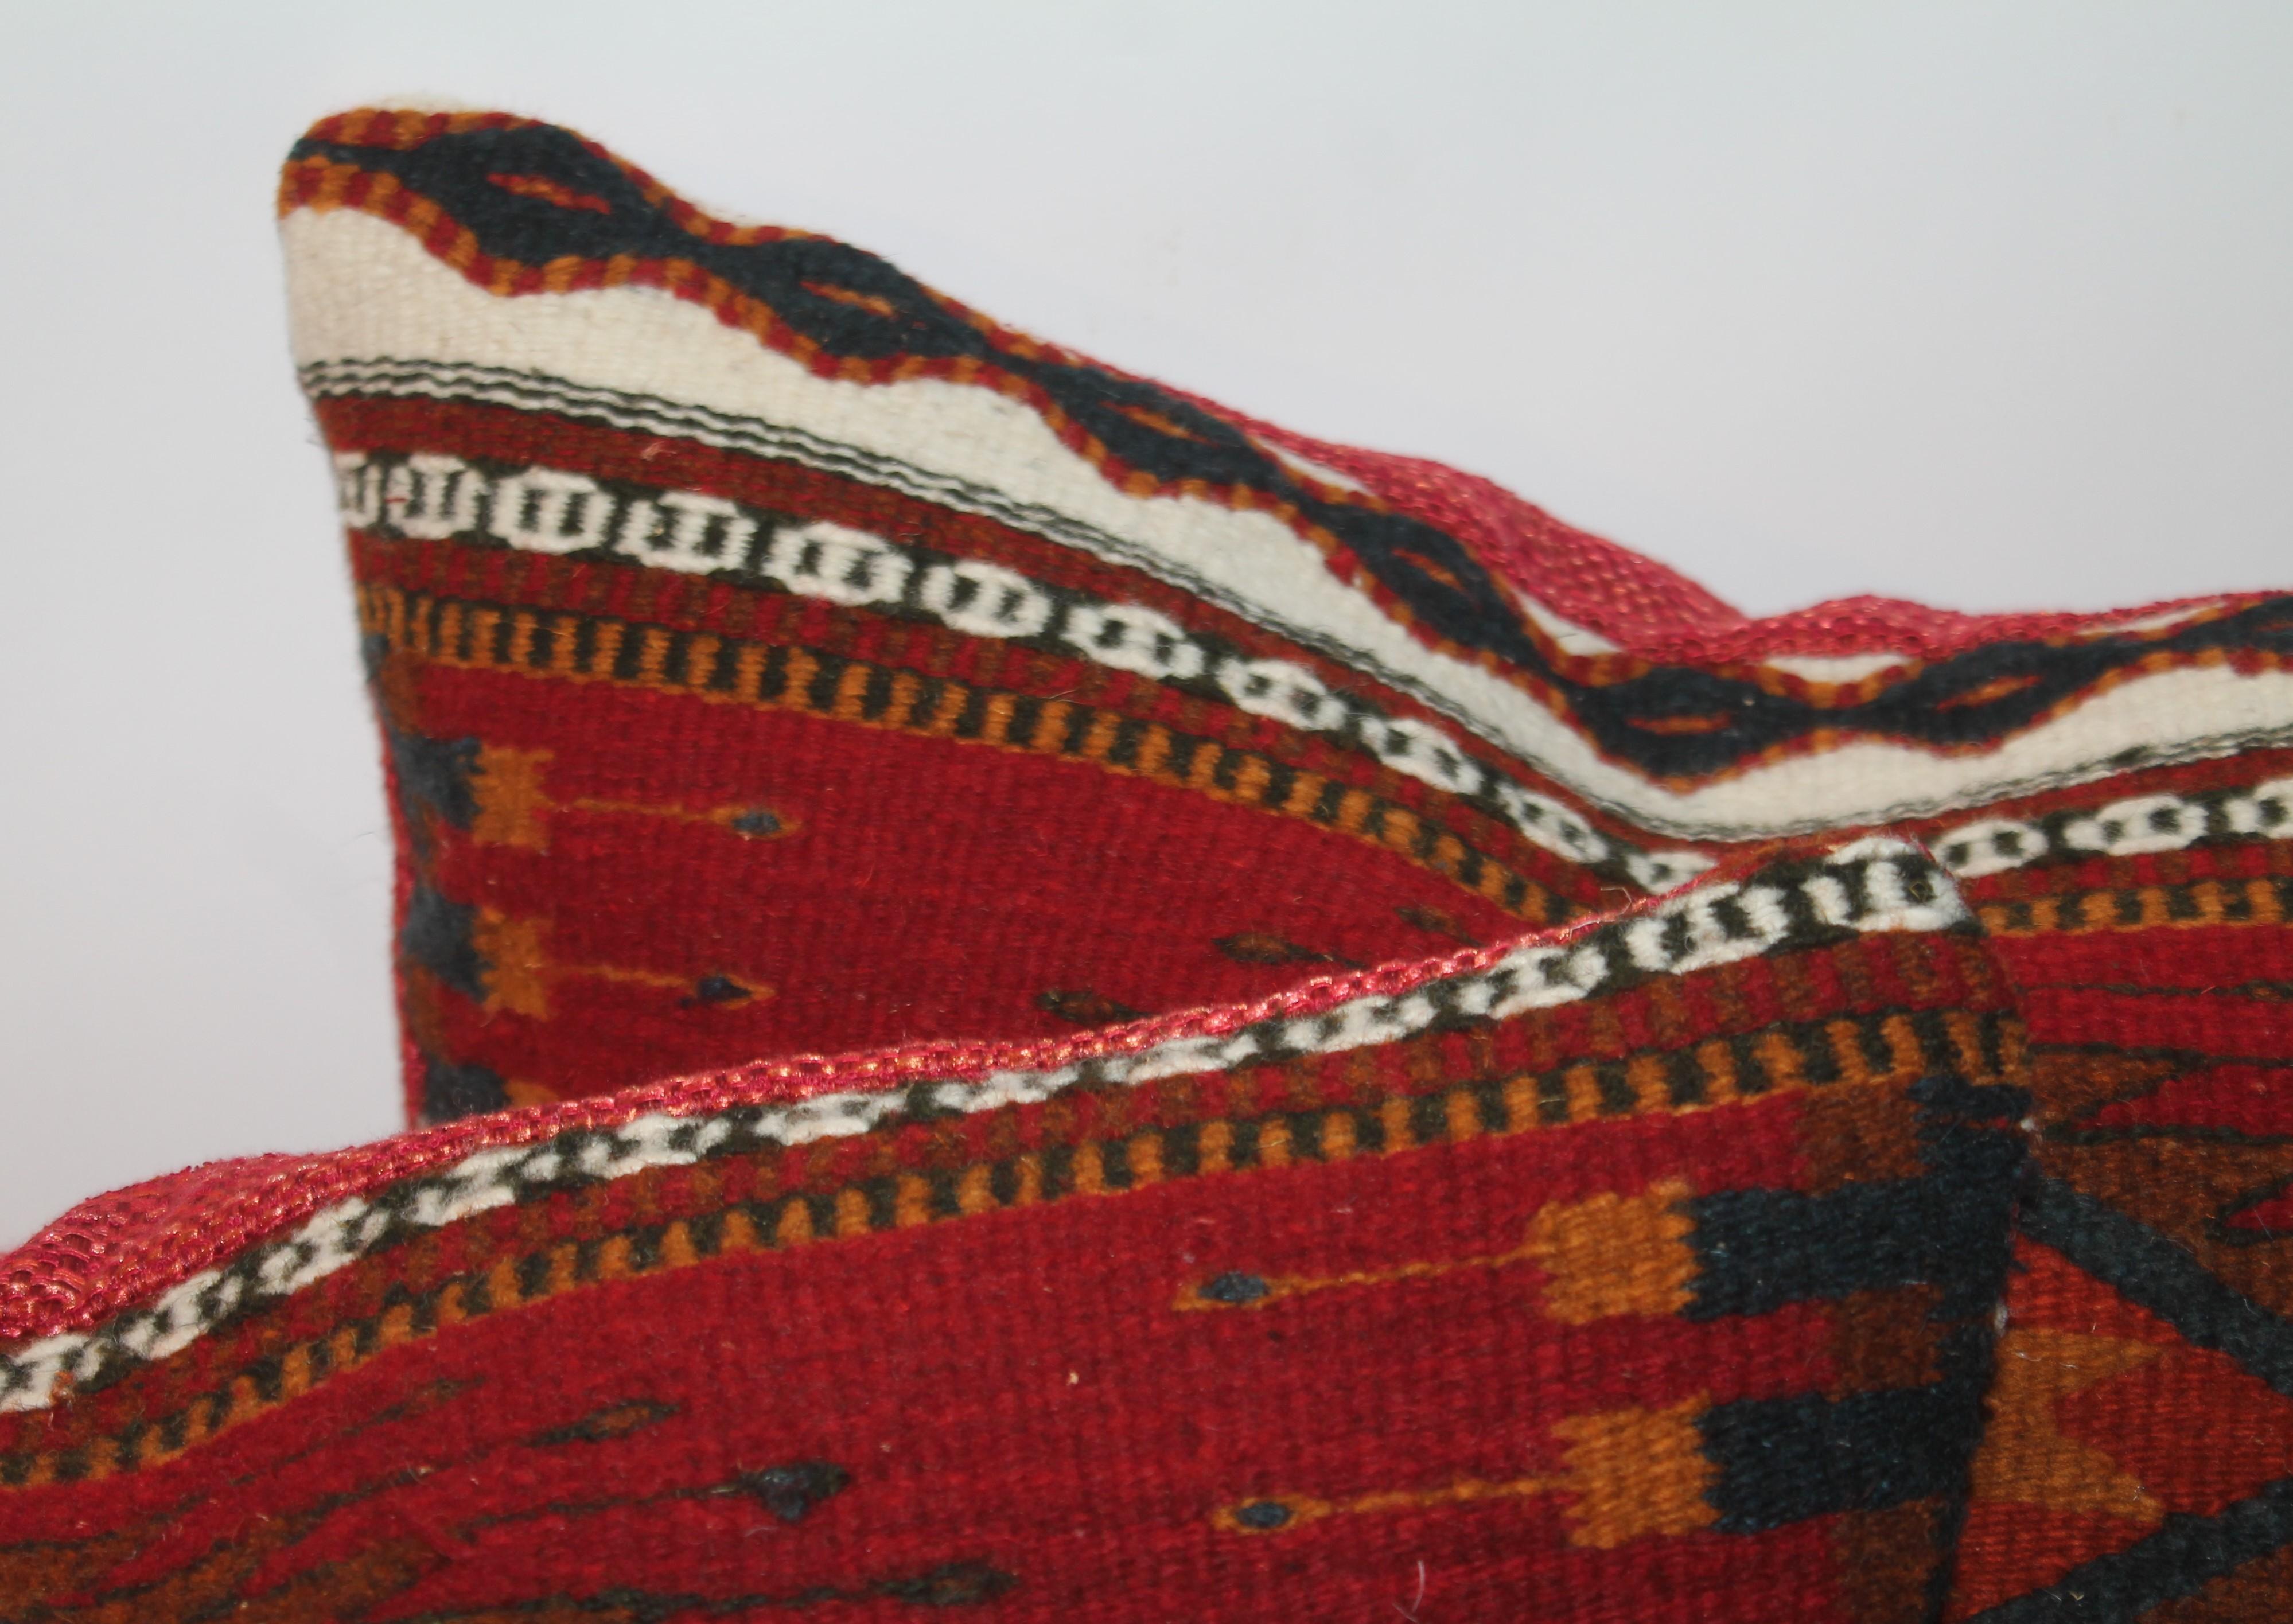 Coussins en tissage indien mexicain en bon état, avec un dos en lin de coton noir.

Les oreillers mesurent 
18 x 21 et 17 x 21.